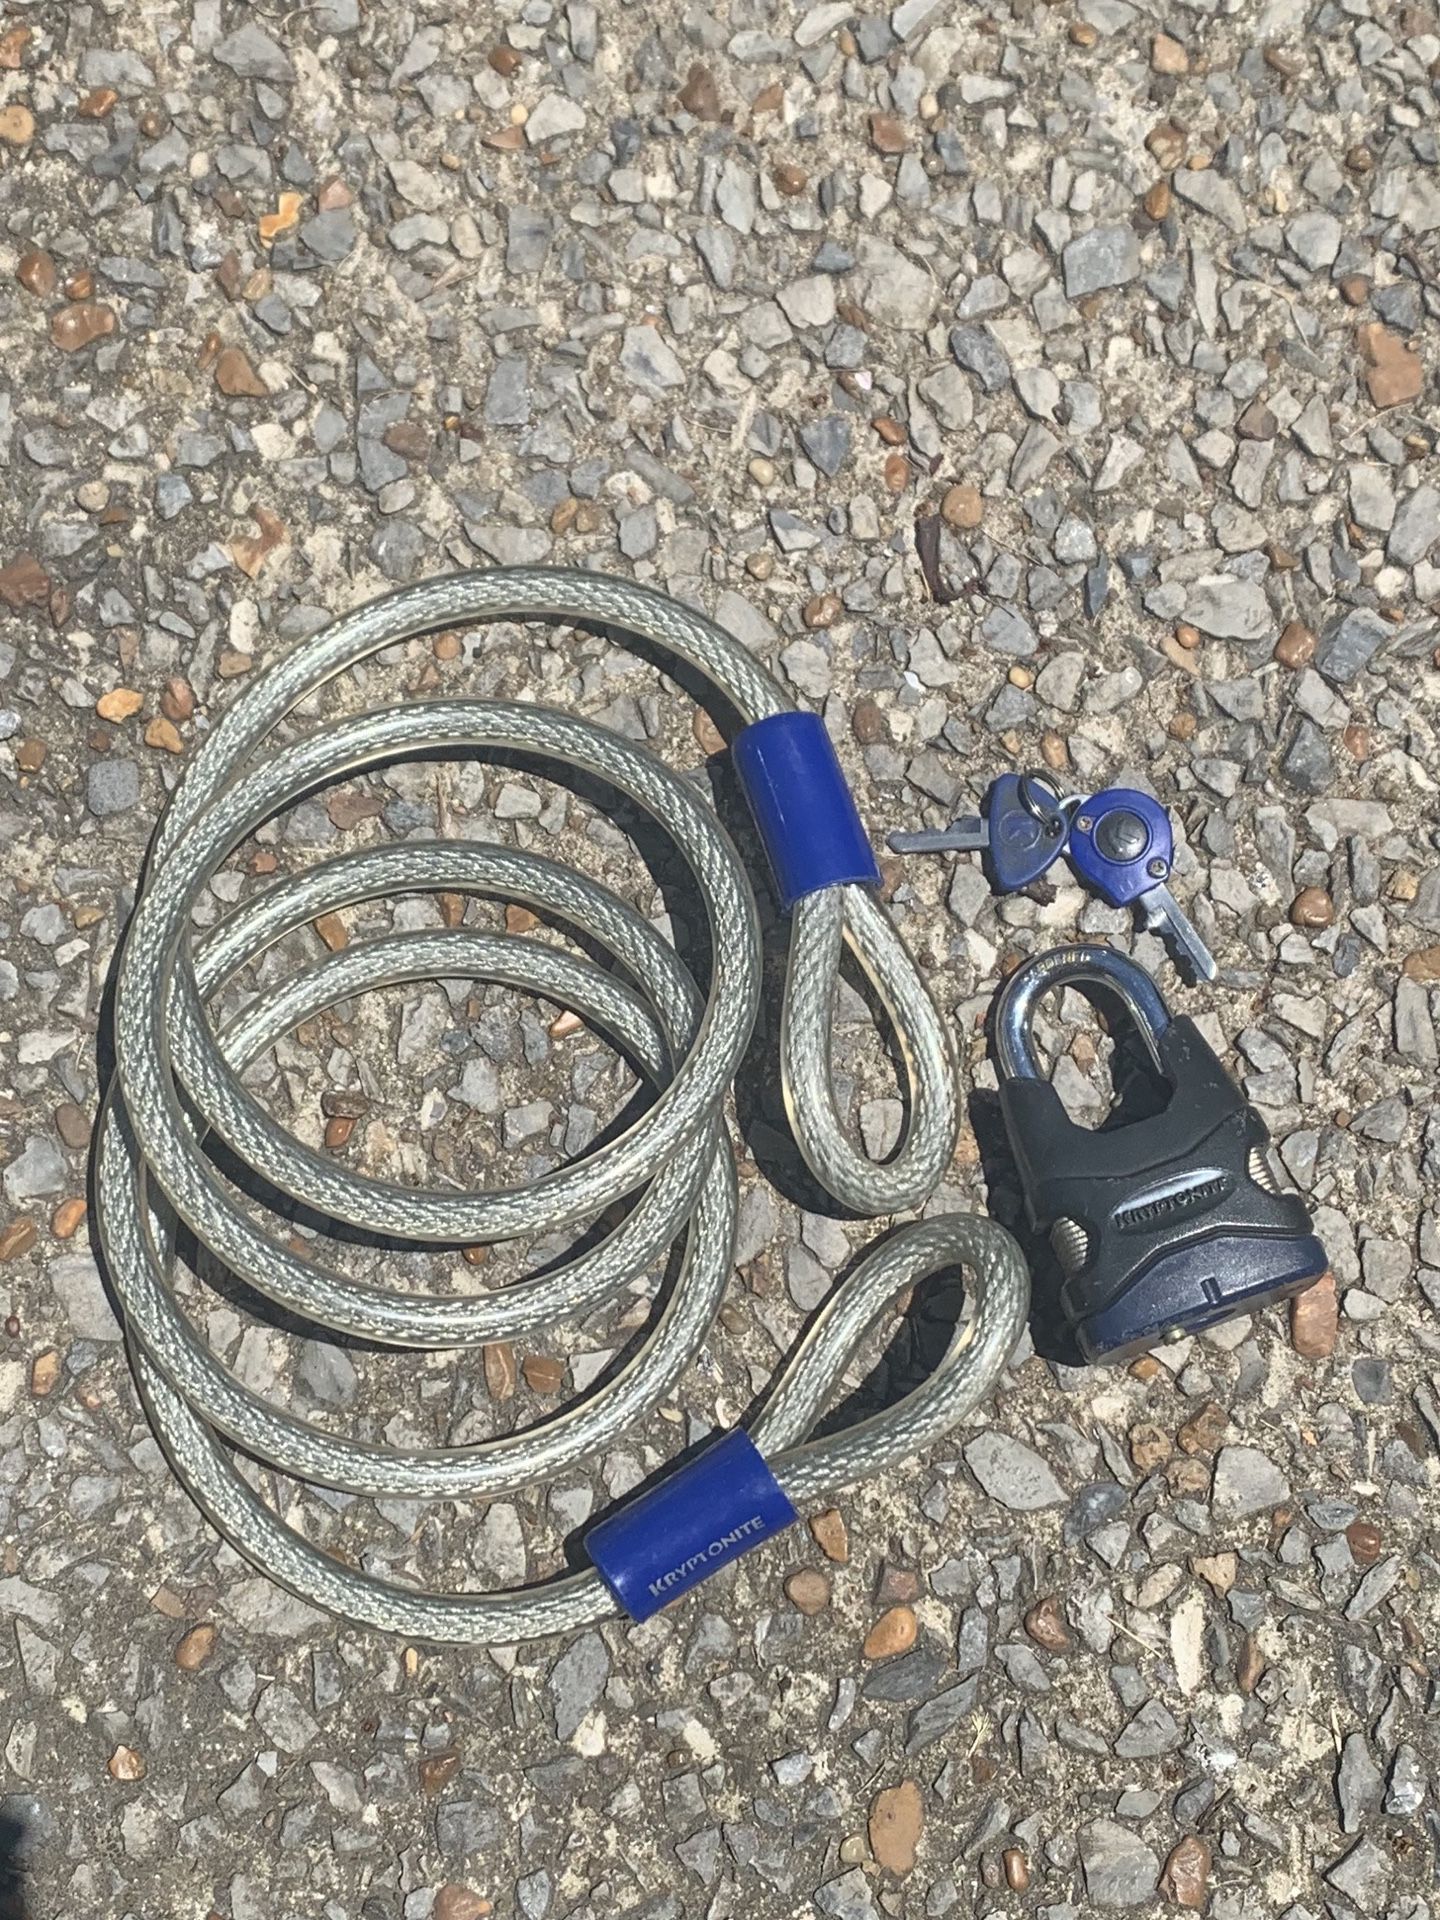 Krytonite Bike Lock, Rope, and Keys